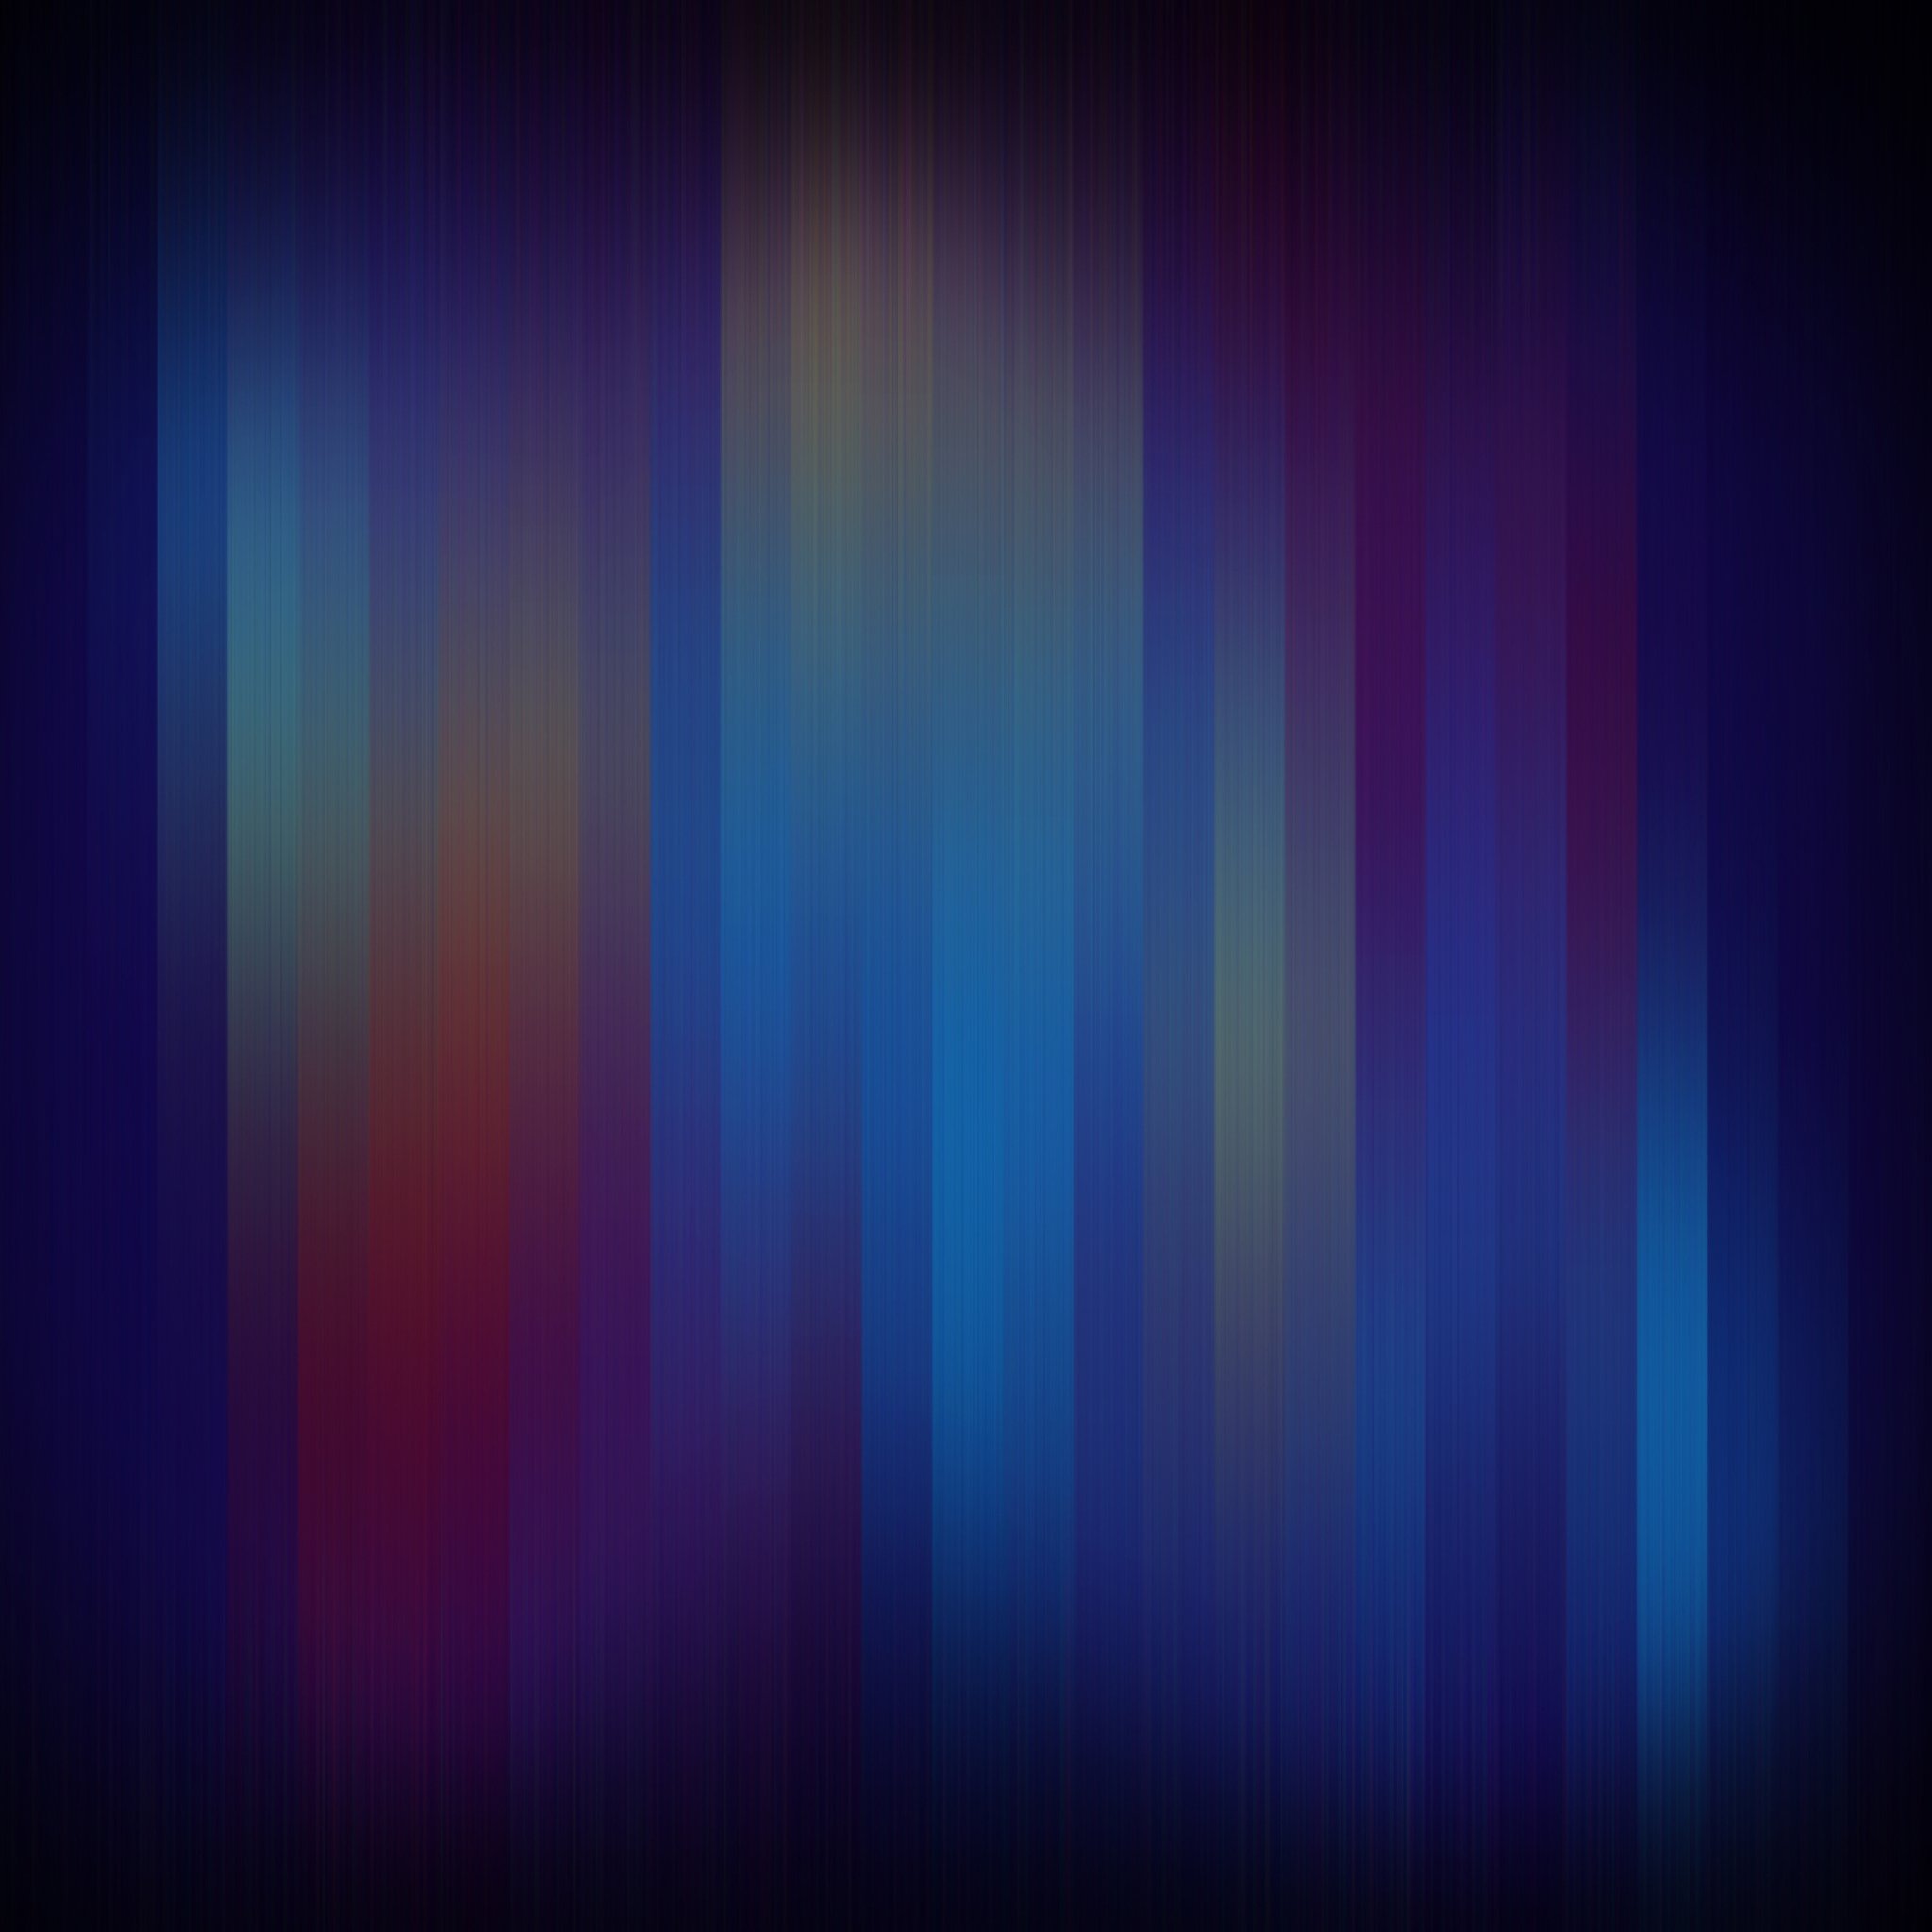   abstract wallpaper ipad retina 20482048 Abstract hd wallpapers 2048x2048